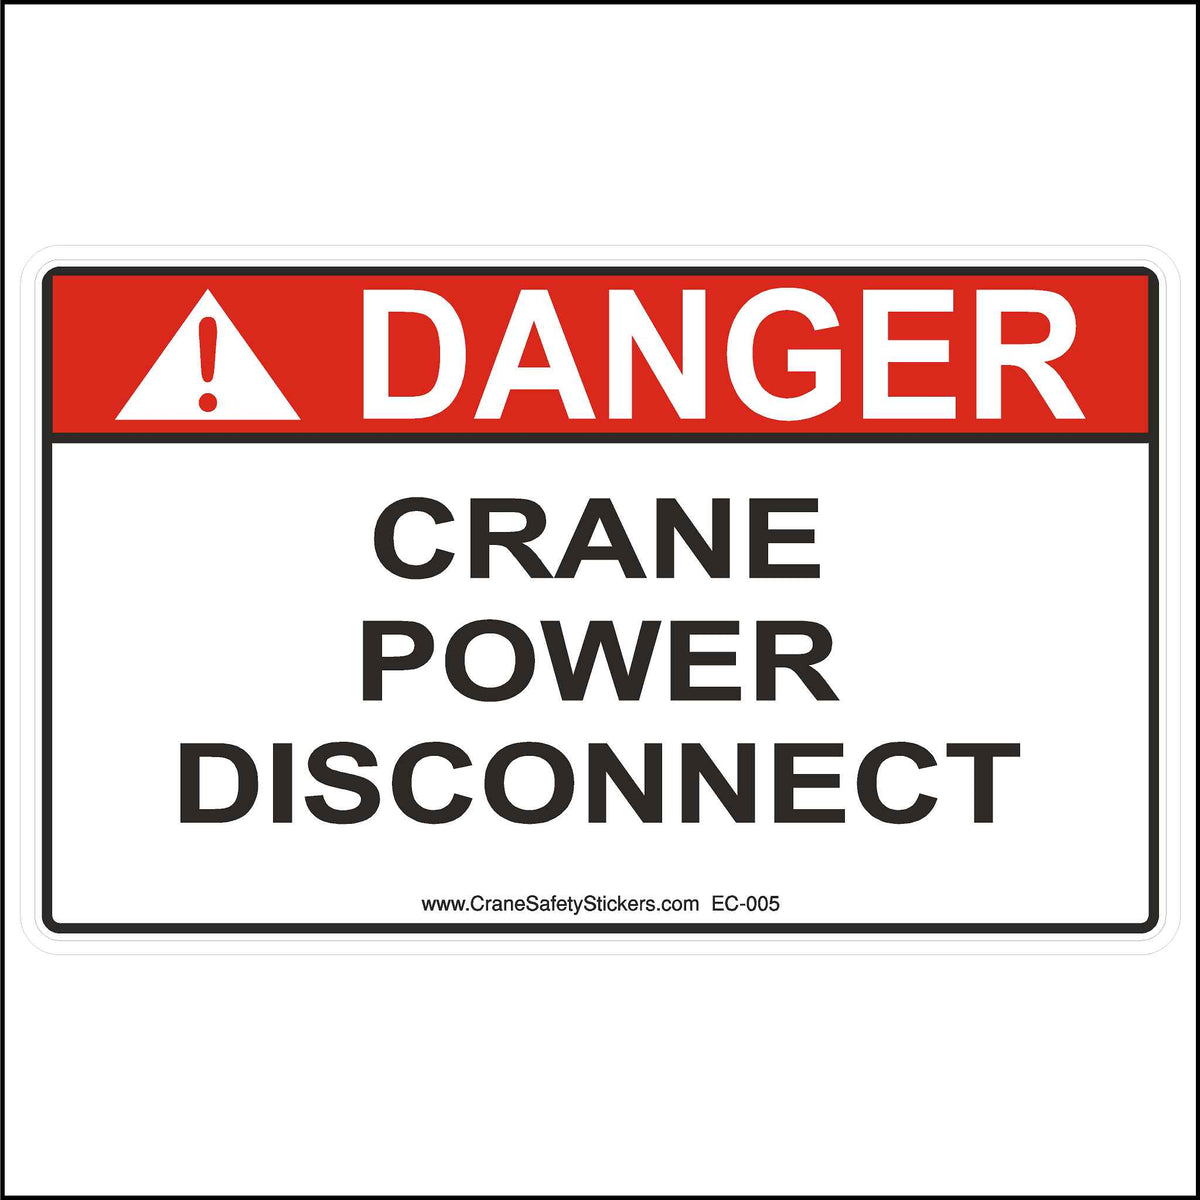 Crane Power Disconnect Label.